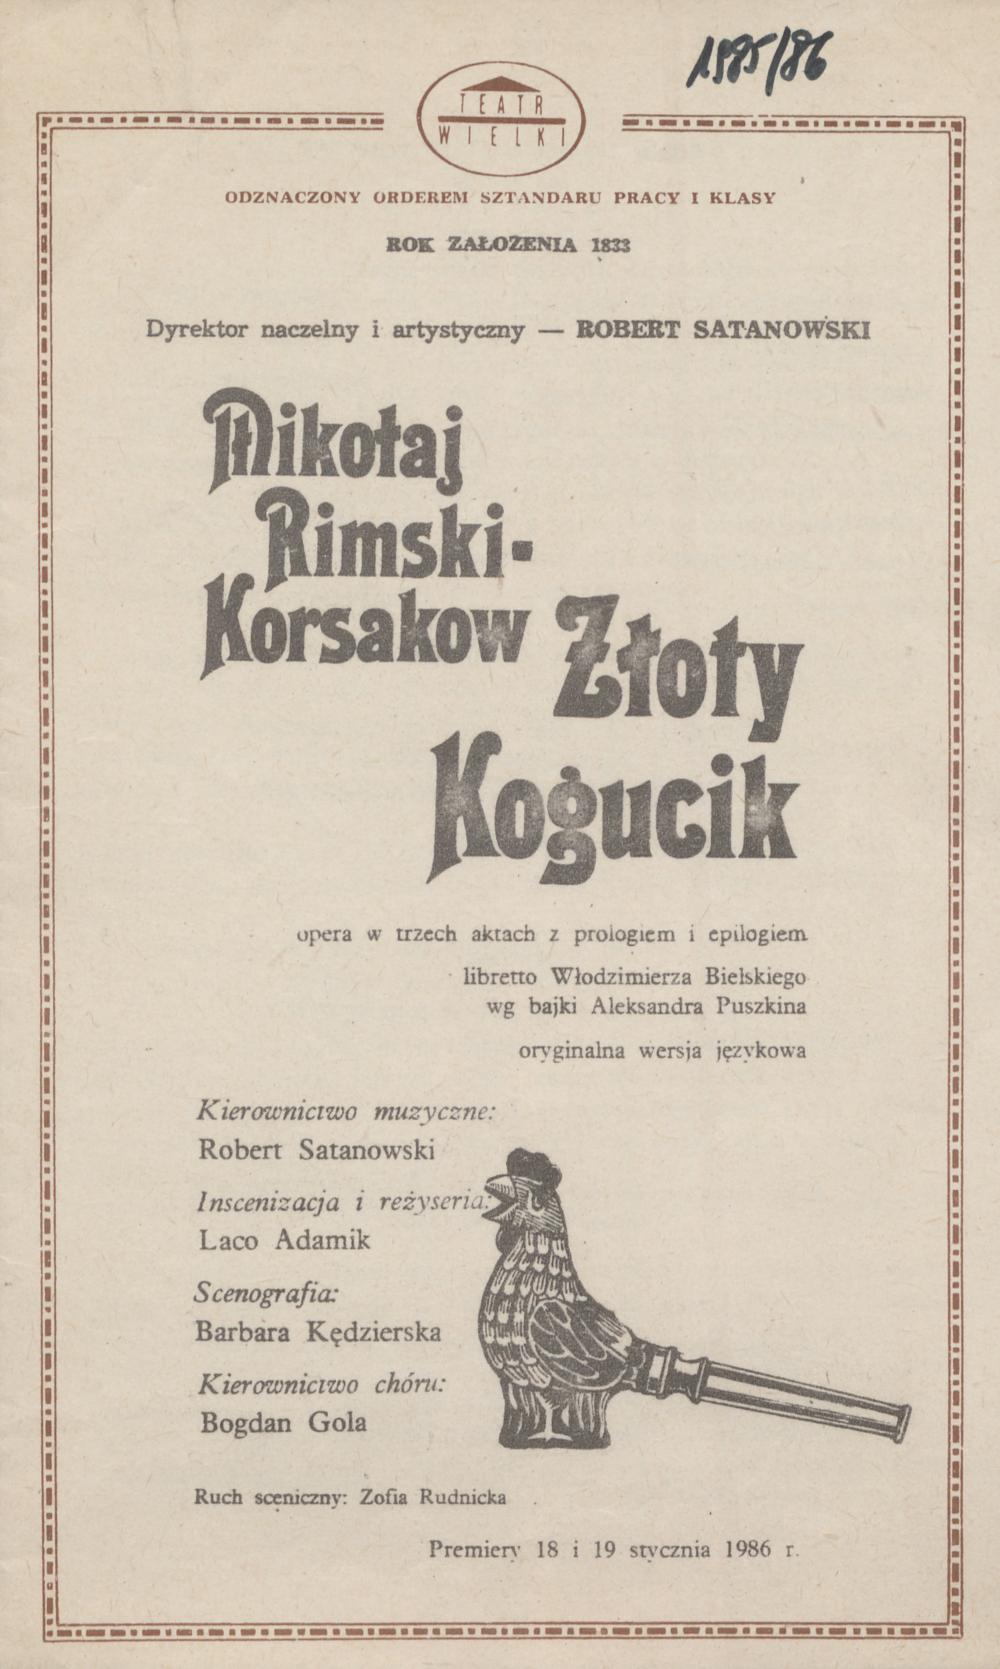 Wkładka obsadowa. „Złoty kogucik” Mikołaj Rimski-Korsakow 29-01-1986